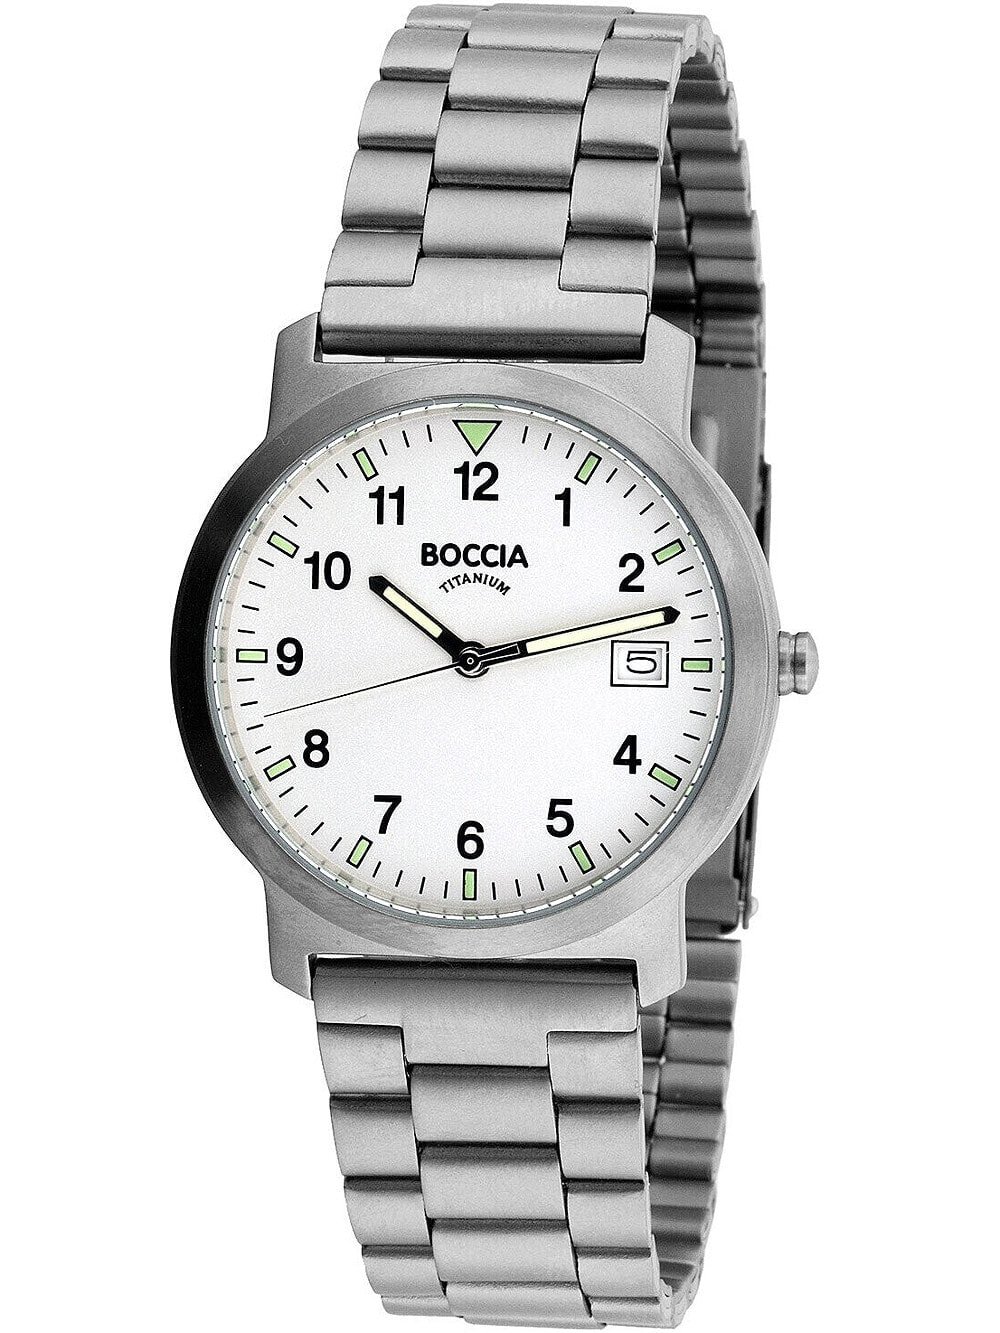 Мужские наручные часы с серебряным браслетом Boccia 3630-02 mens watch titanium 37mm 5ATM